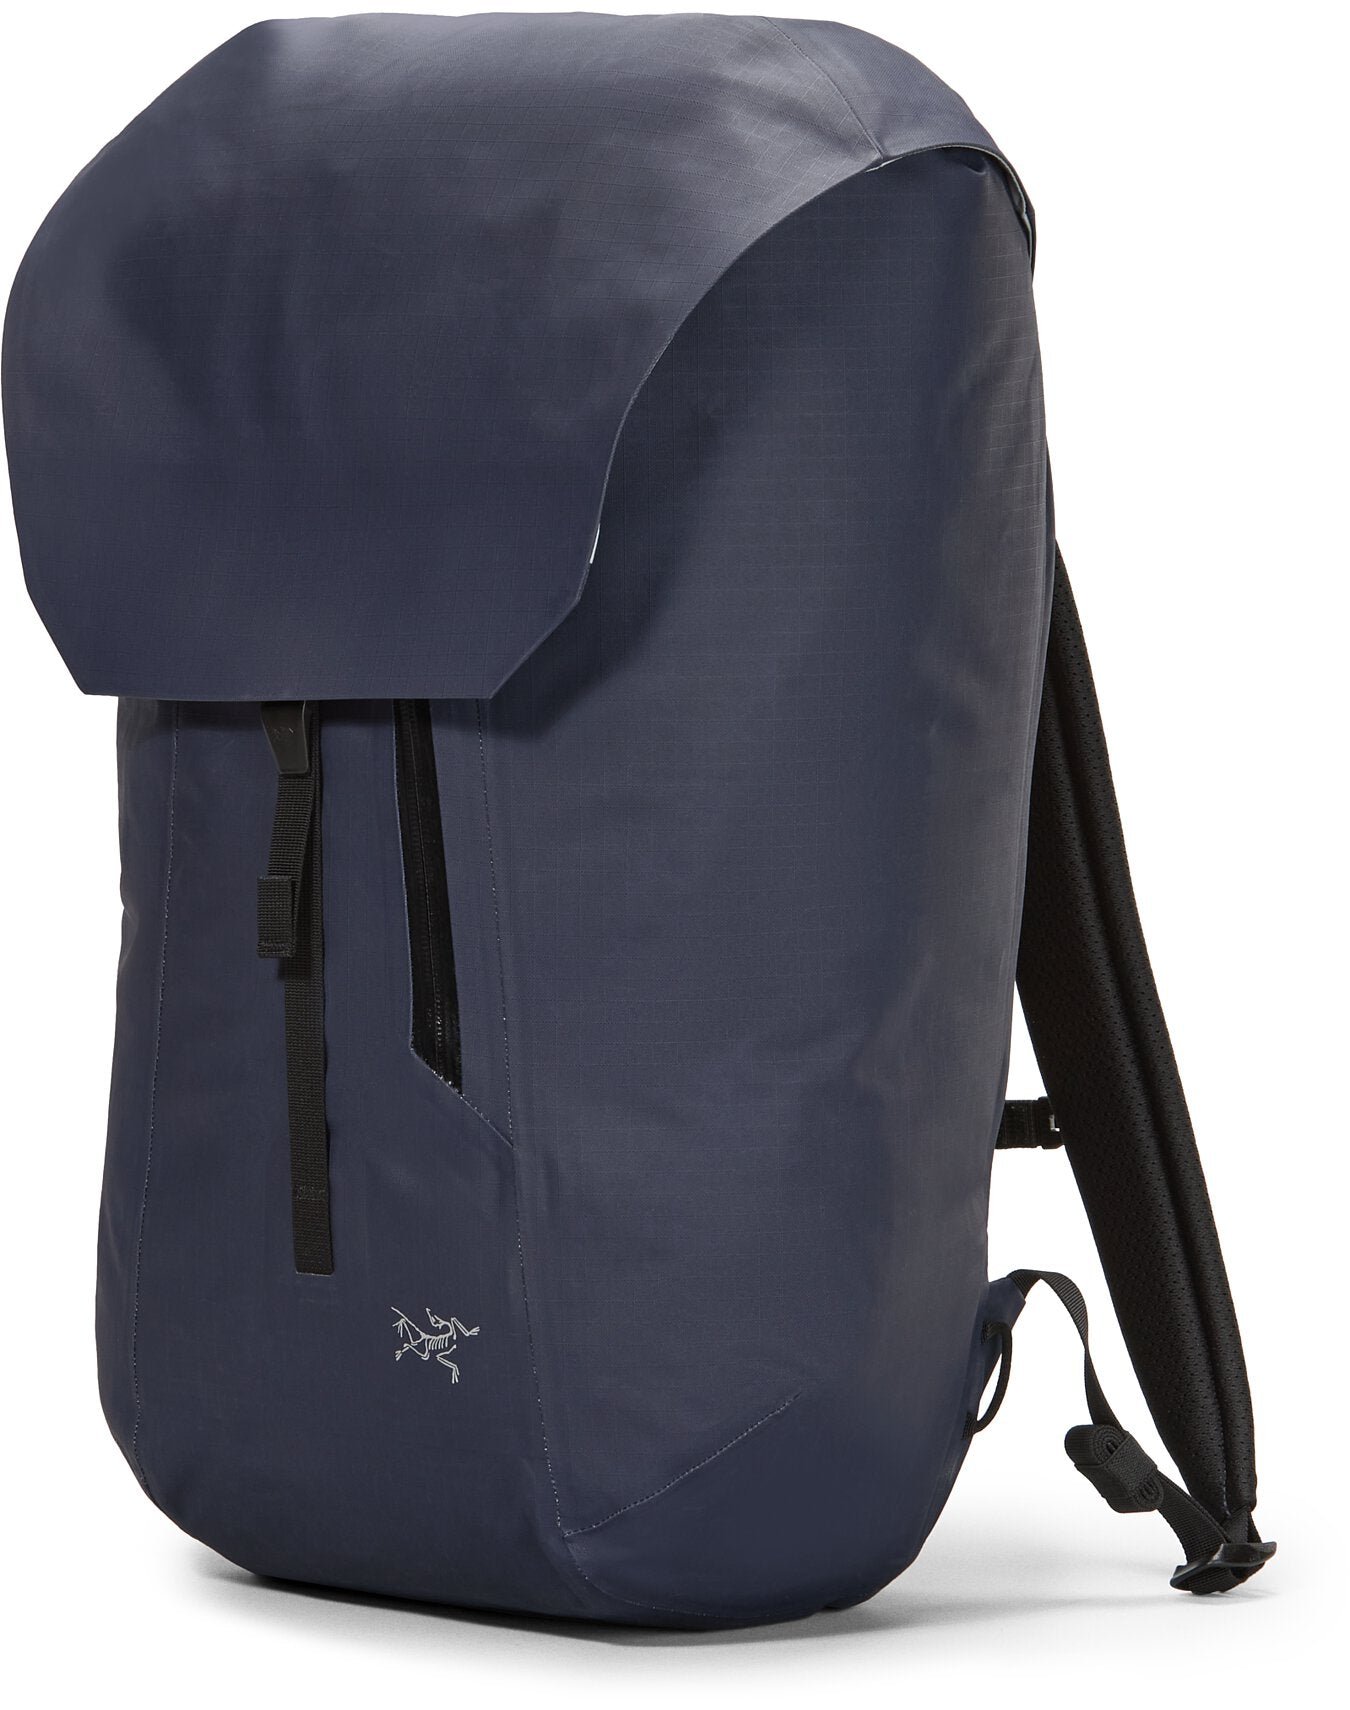 Granville-25-Backpack-Black-Sapphire.jpg